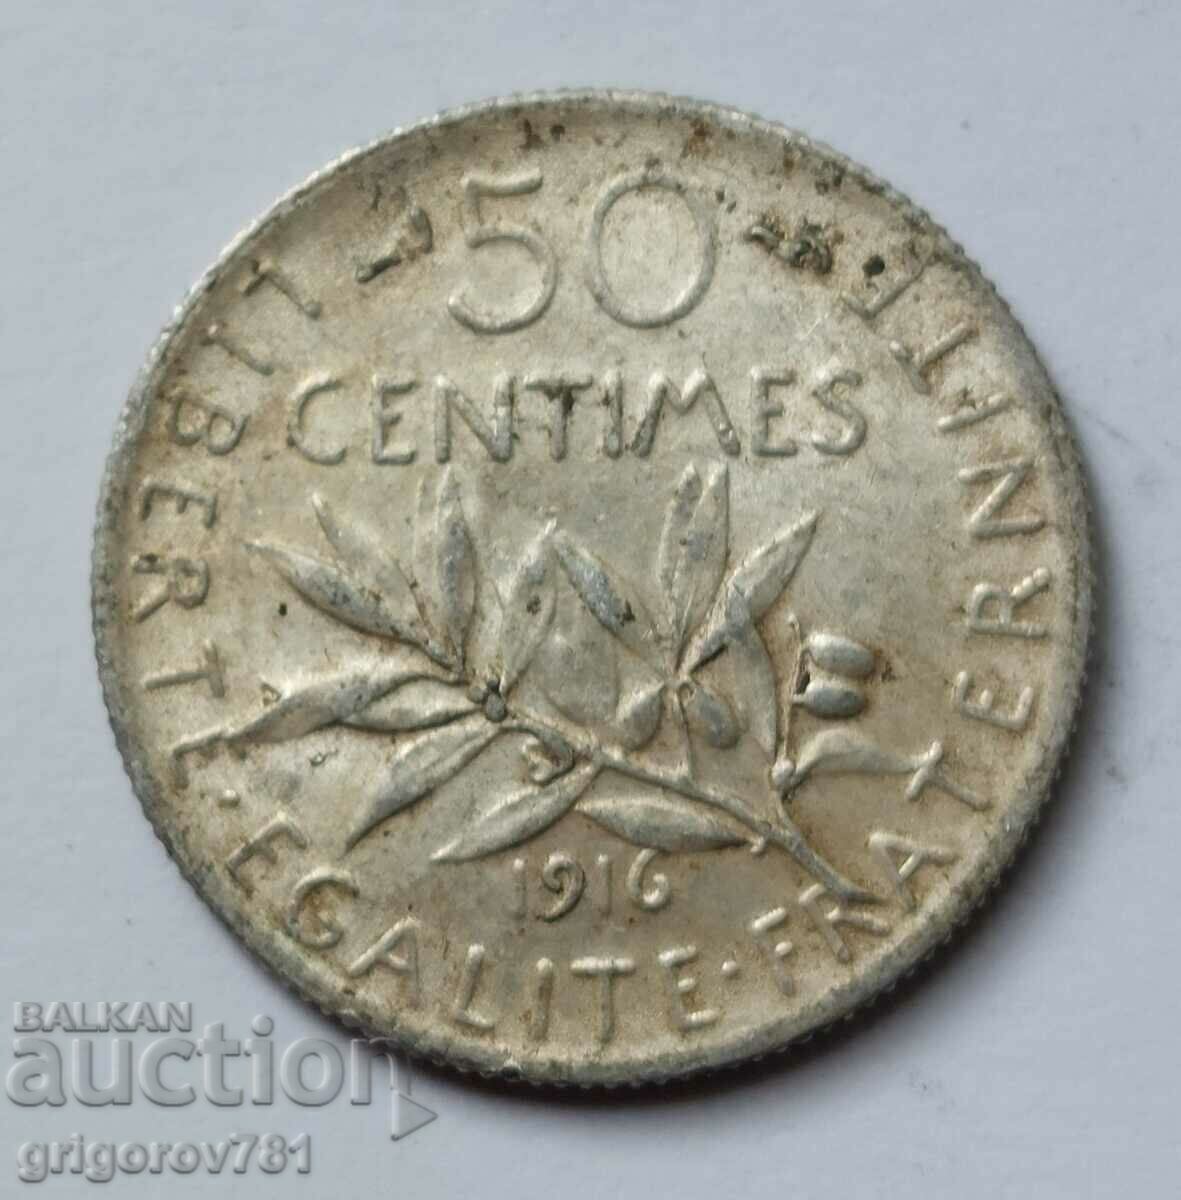 Ασημένιο 50 εκατοστά Γαλλία 1916 - ασημένιο νόμισμα №5